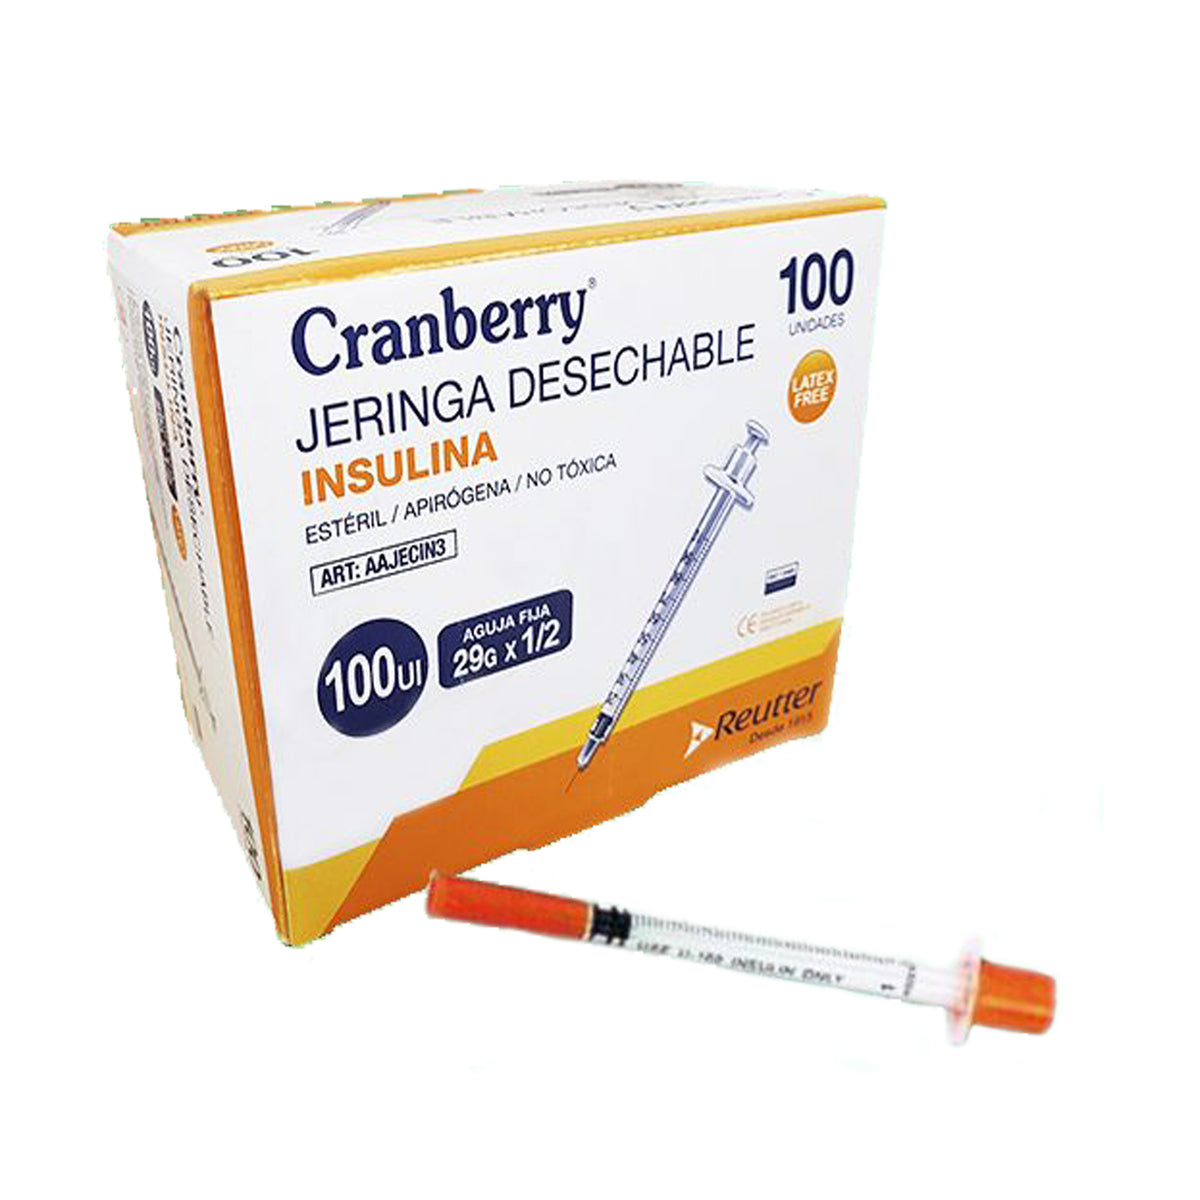 Jeringa Insulina 29g x 1/2 100UI